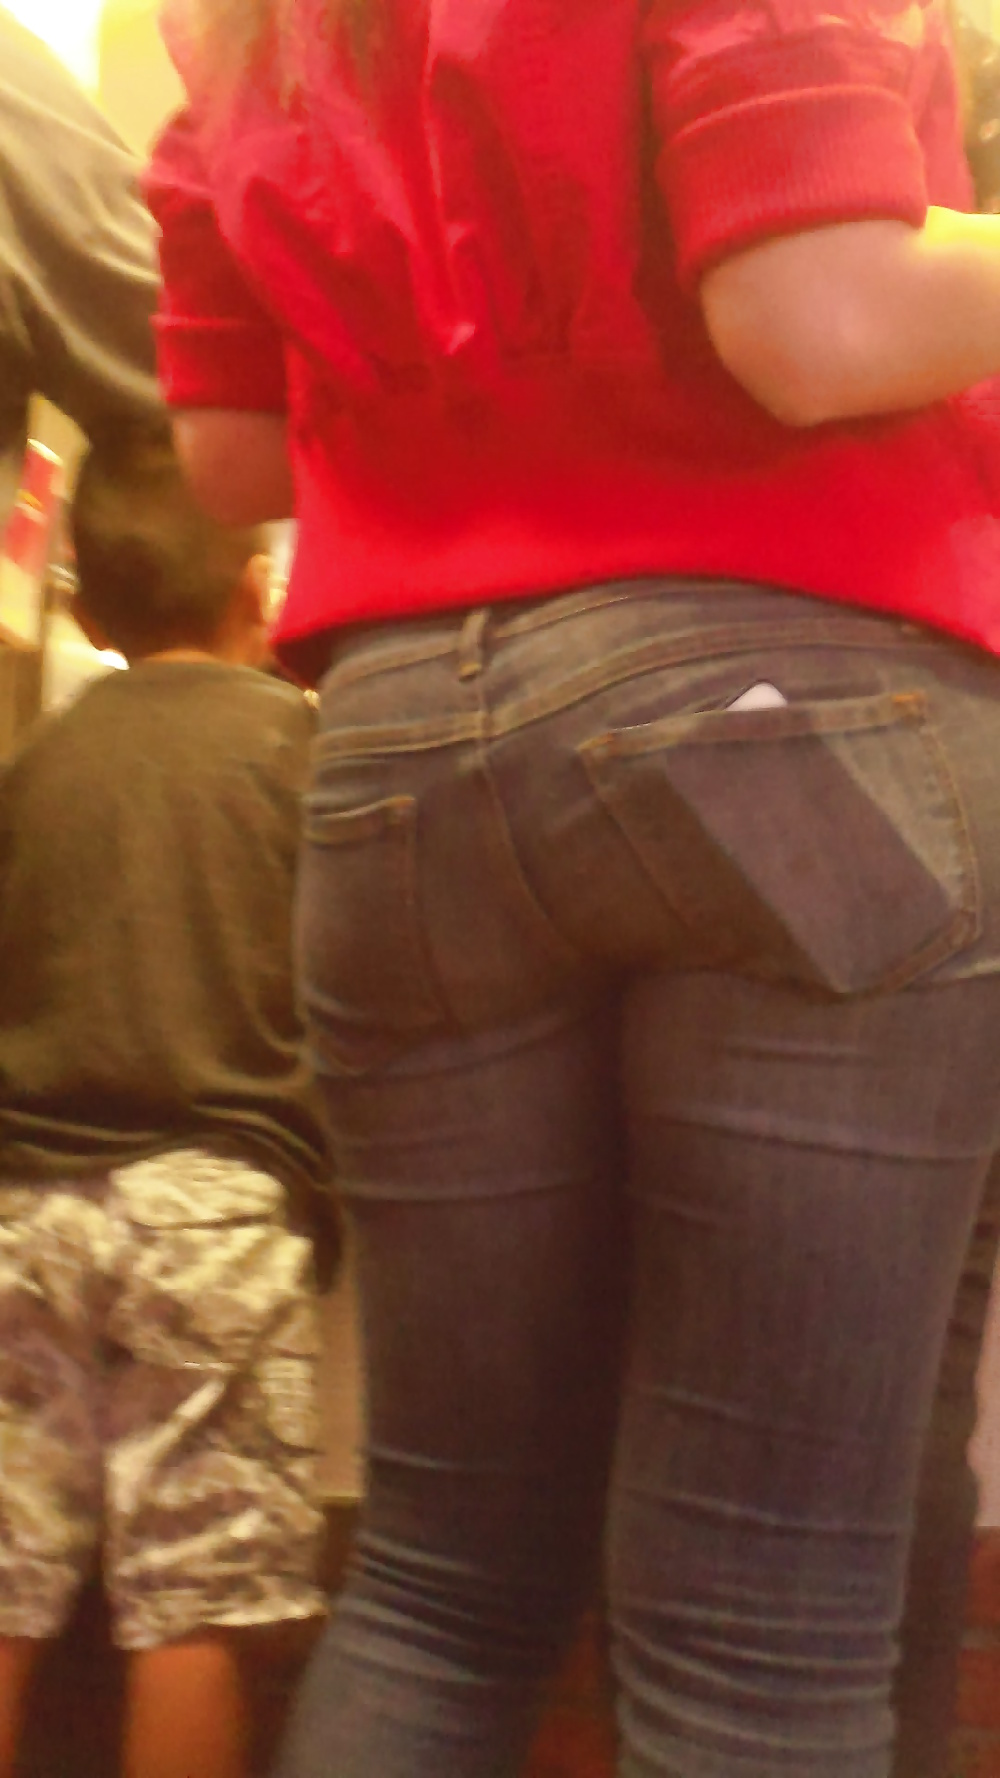 Popular teen girls ass & butt in jeans Part 6 #32009770